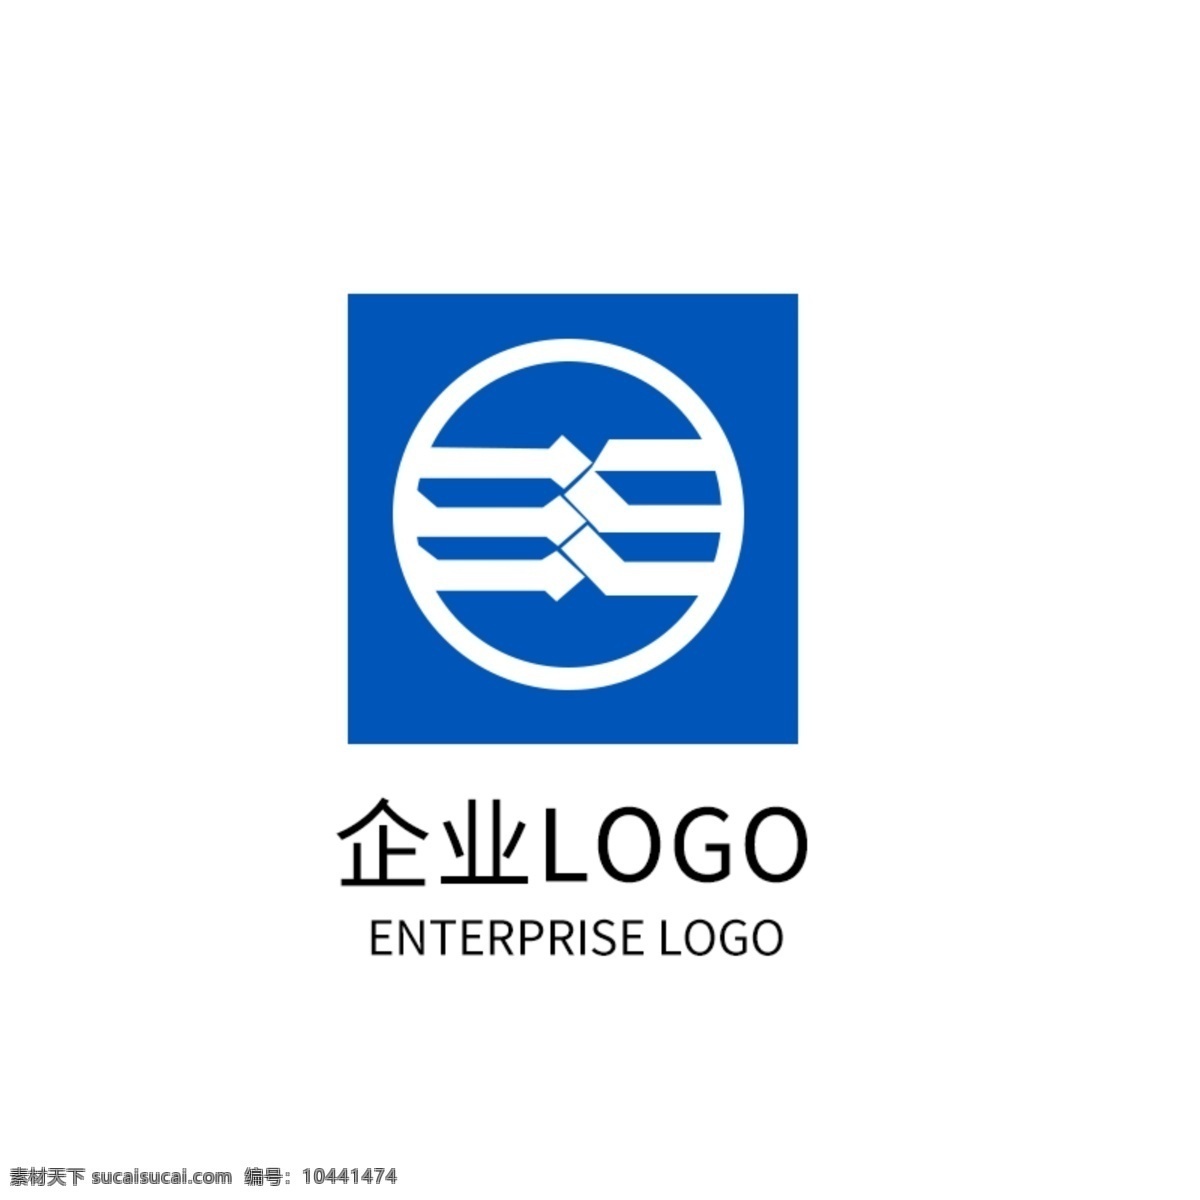 蓝色 科技 公司 logo 企业 标志 旅游公司 标志设计 企业标志